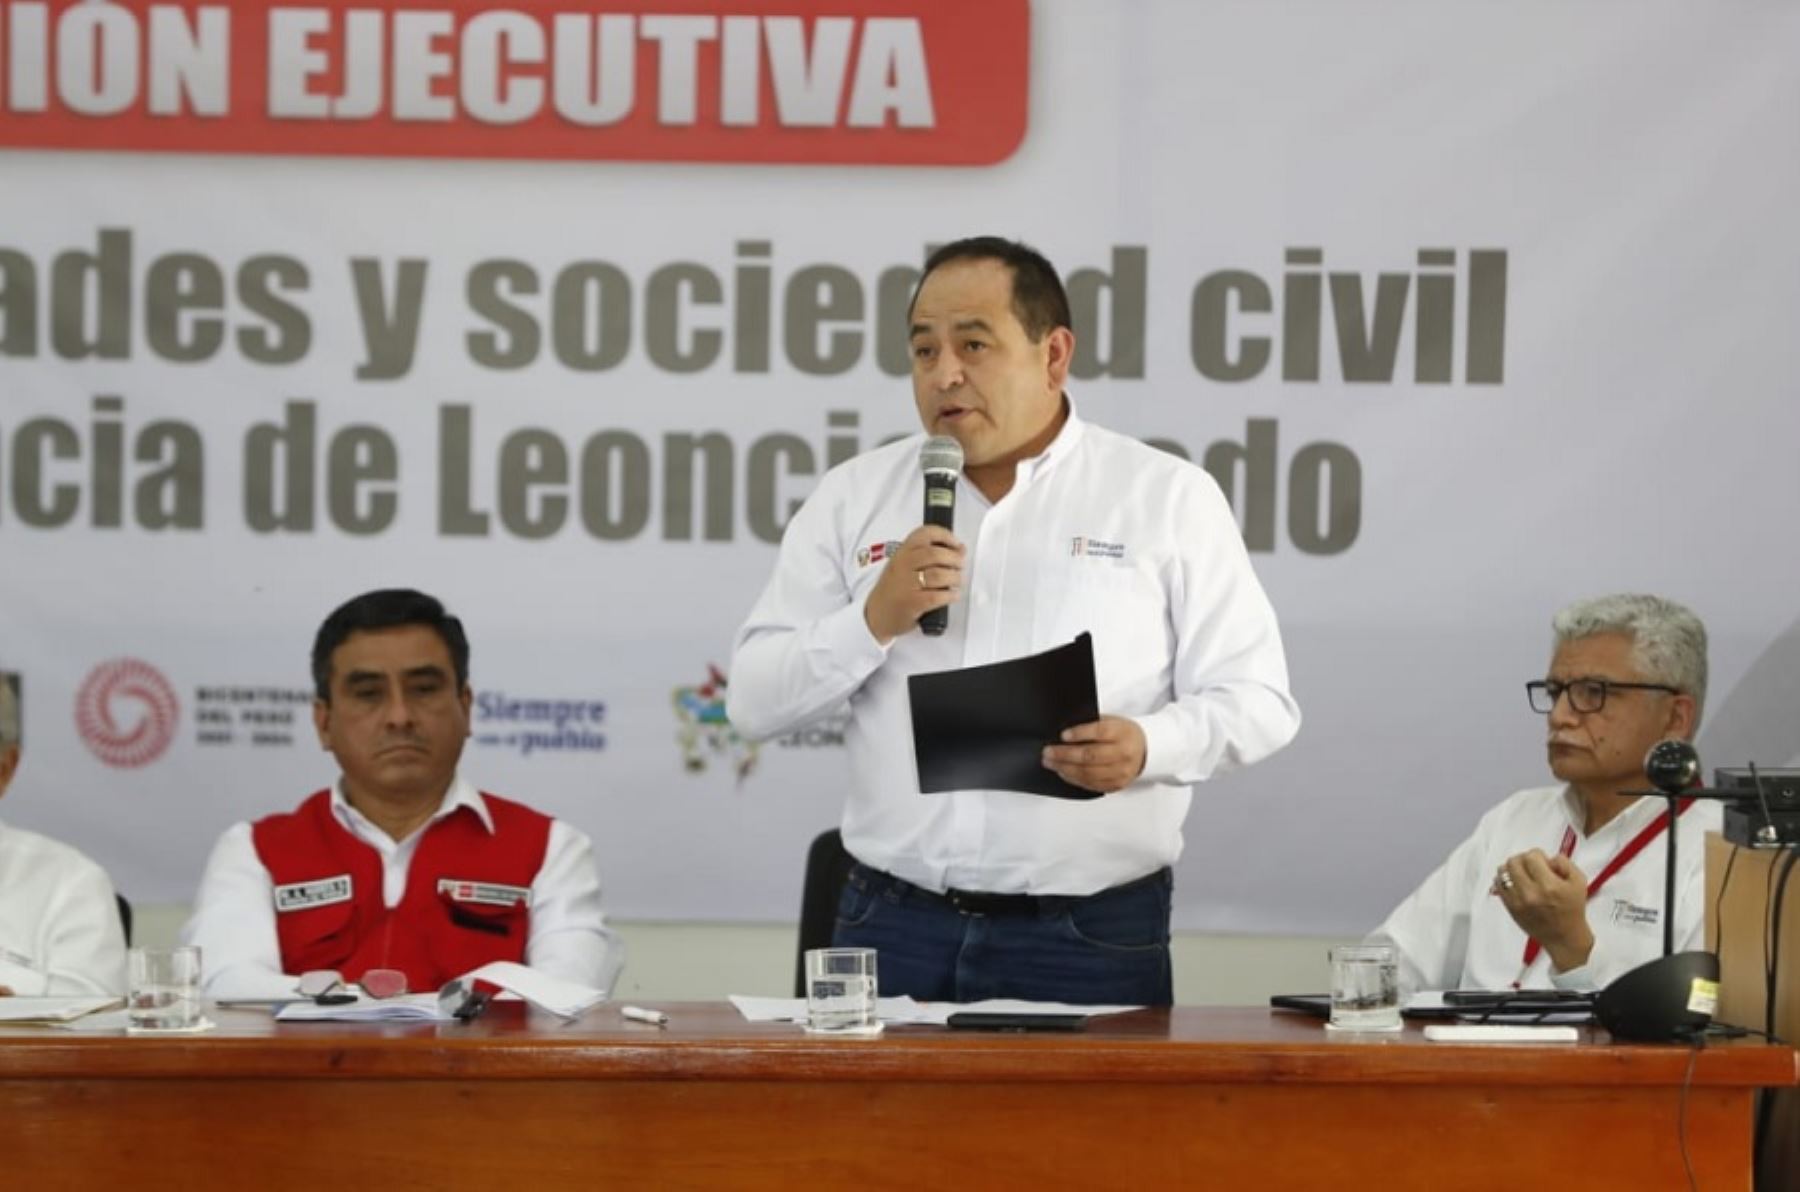 Este año se culminarán 16 obras de agua y saneamiento financiadas o ejecutadas por el Ministerio de Vivienda, Construcción y Saneamiento en la región Huánuco, anunció el titular del sector, César Paniagua Chacón.